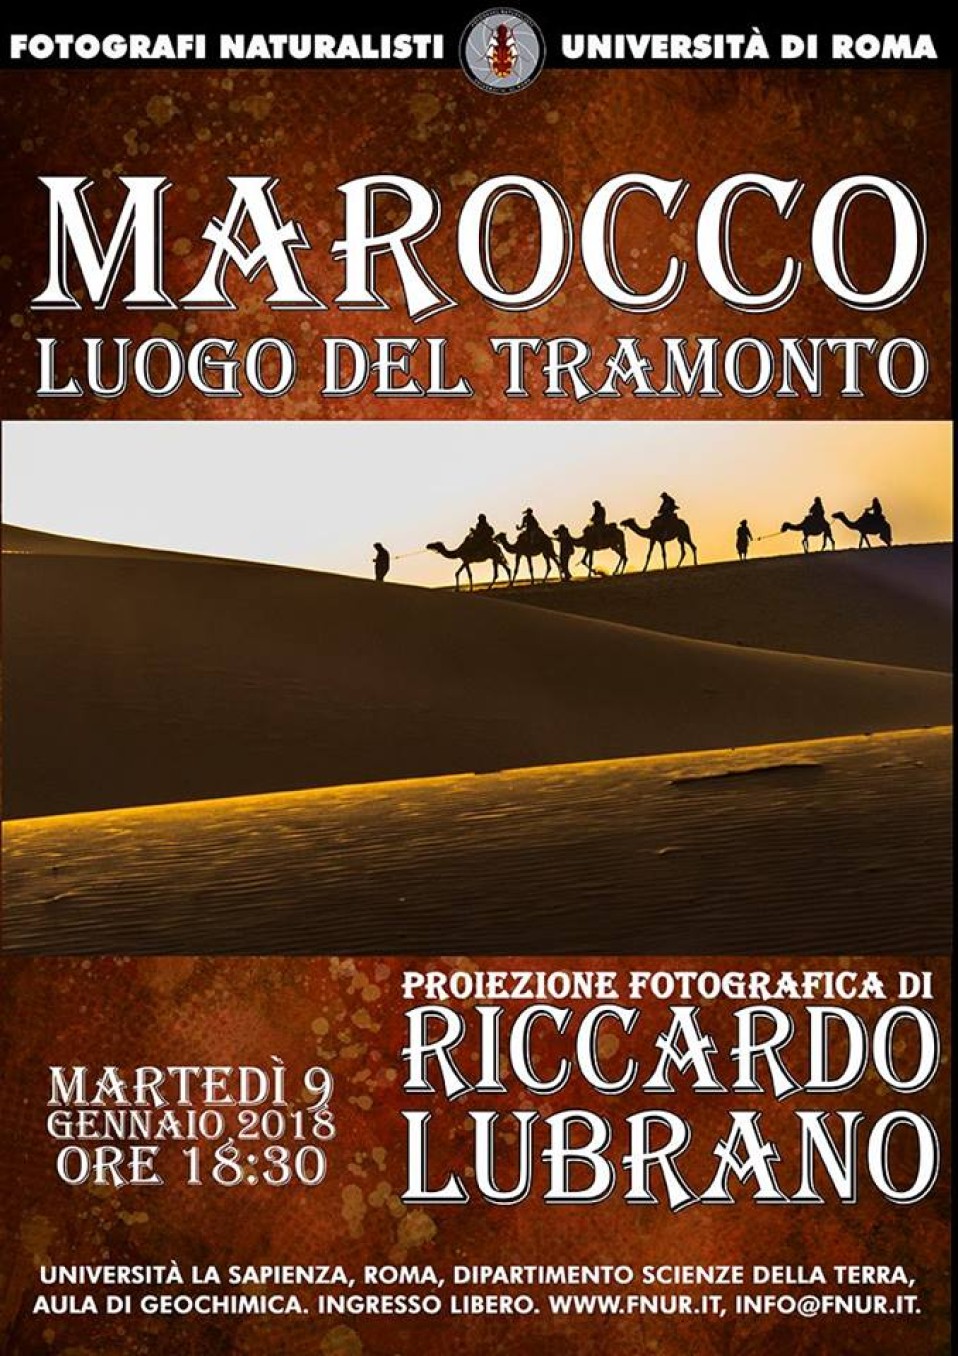 9 Gennaio 2018 – Riccardo Lubrano